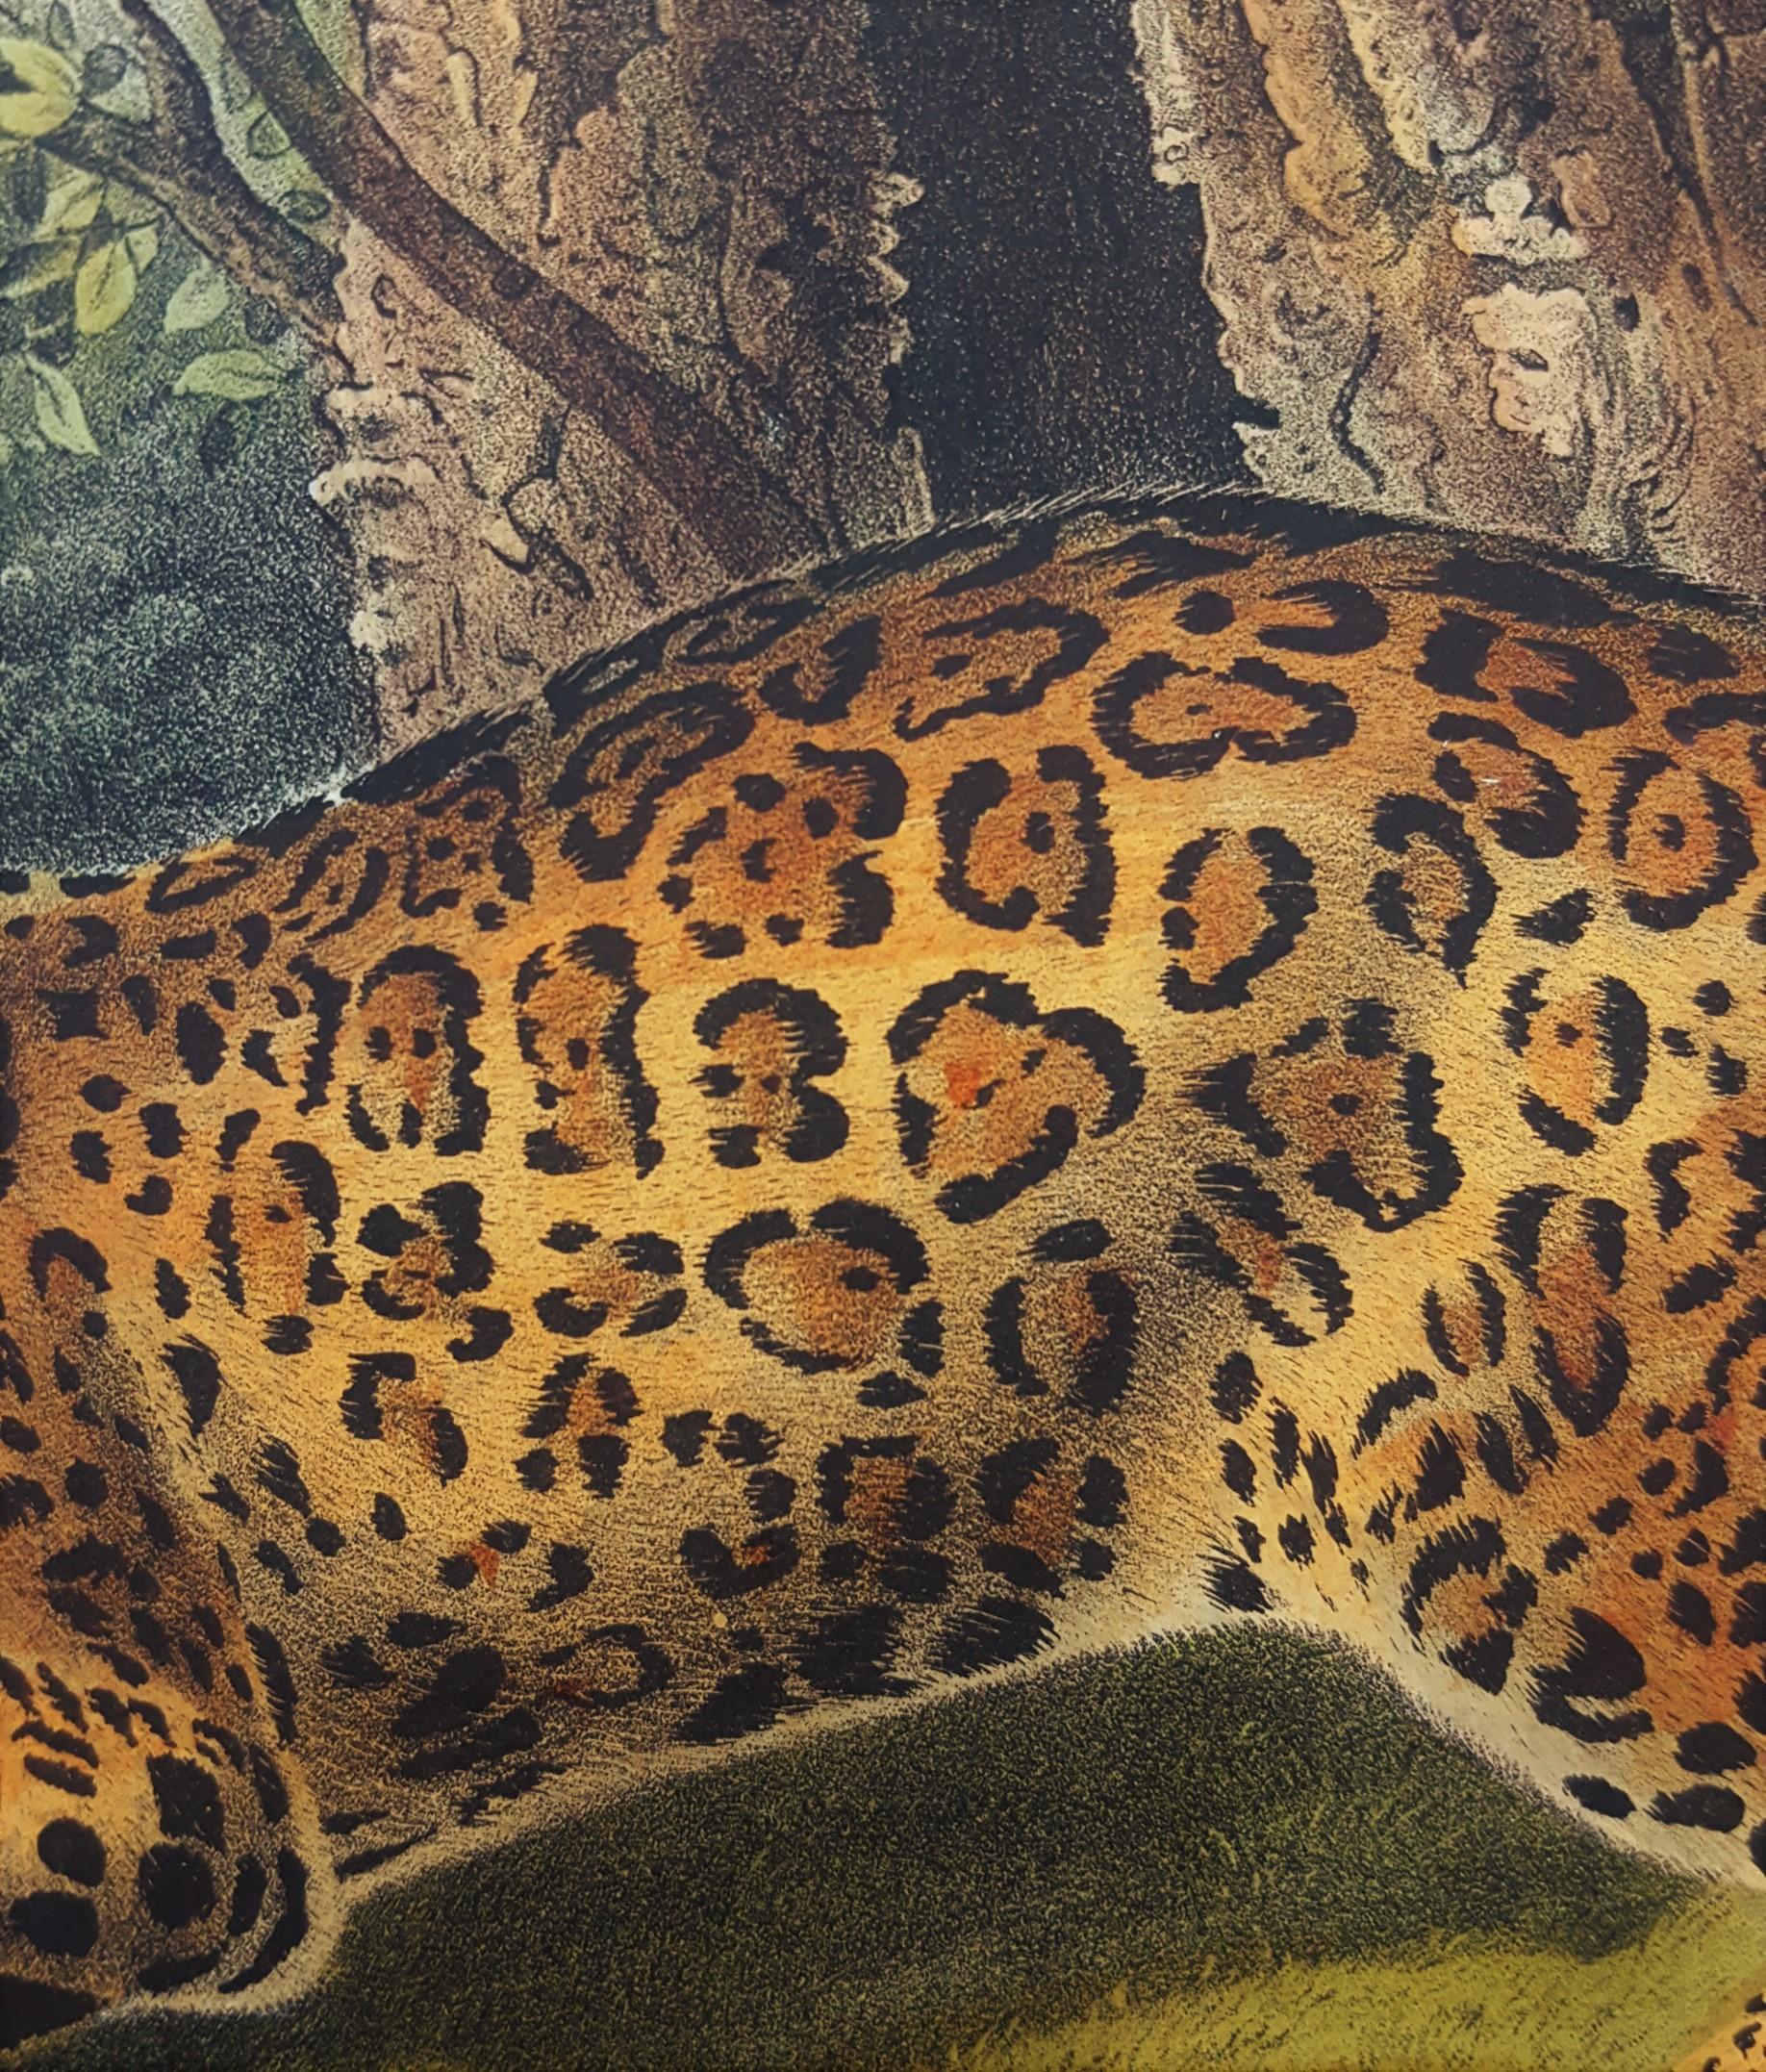 The Jaguar /// Natural History Animal Art Big Cat John James Audubon Wildlife  11